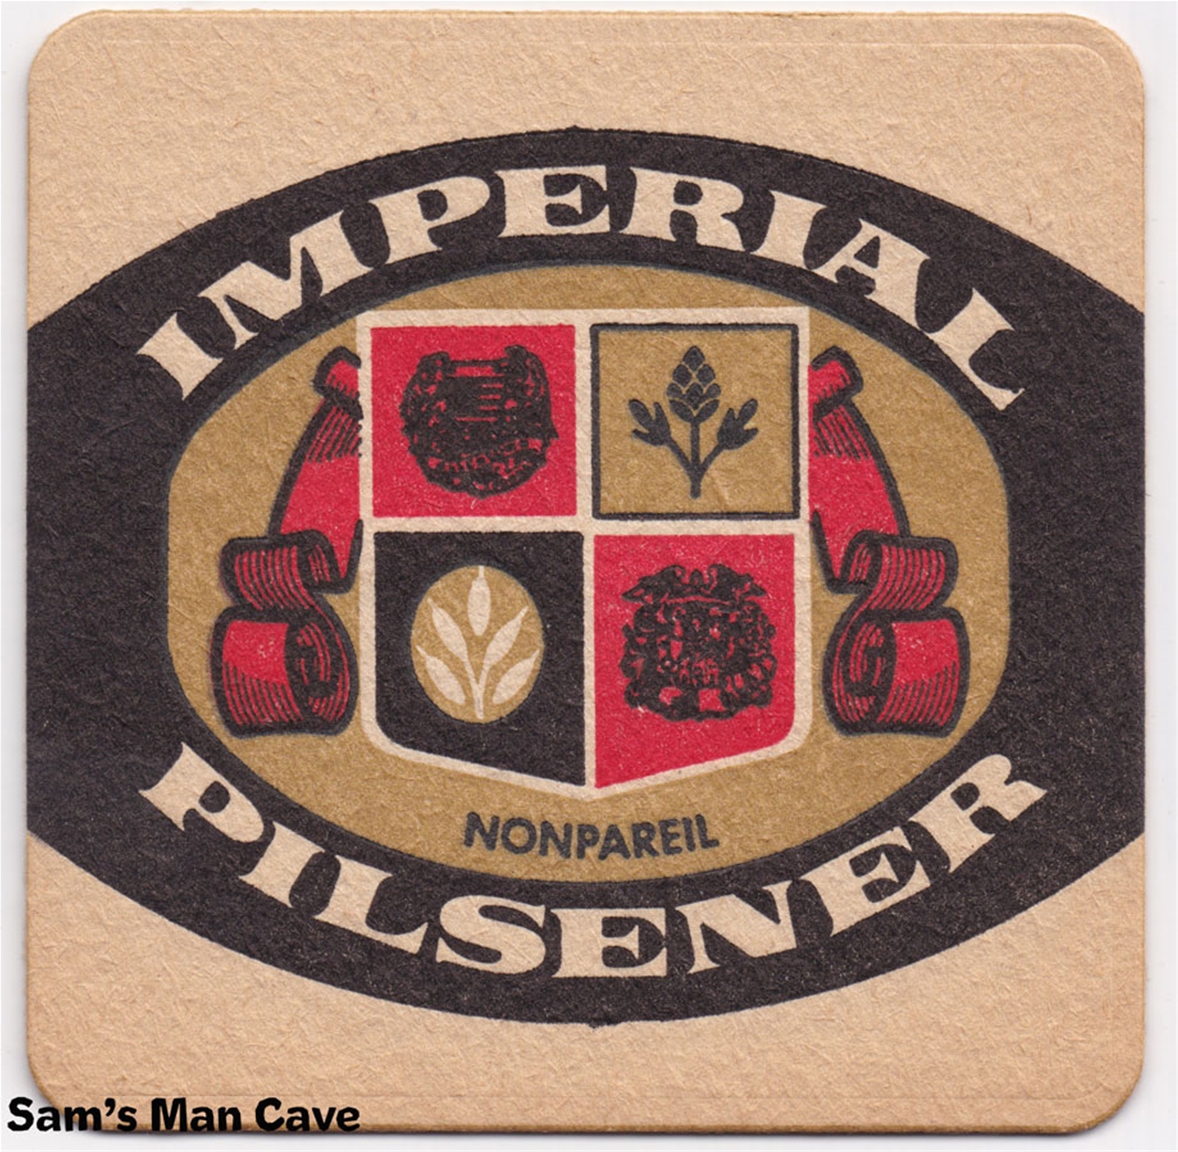 Imperial Pilsener Beer Coaster